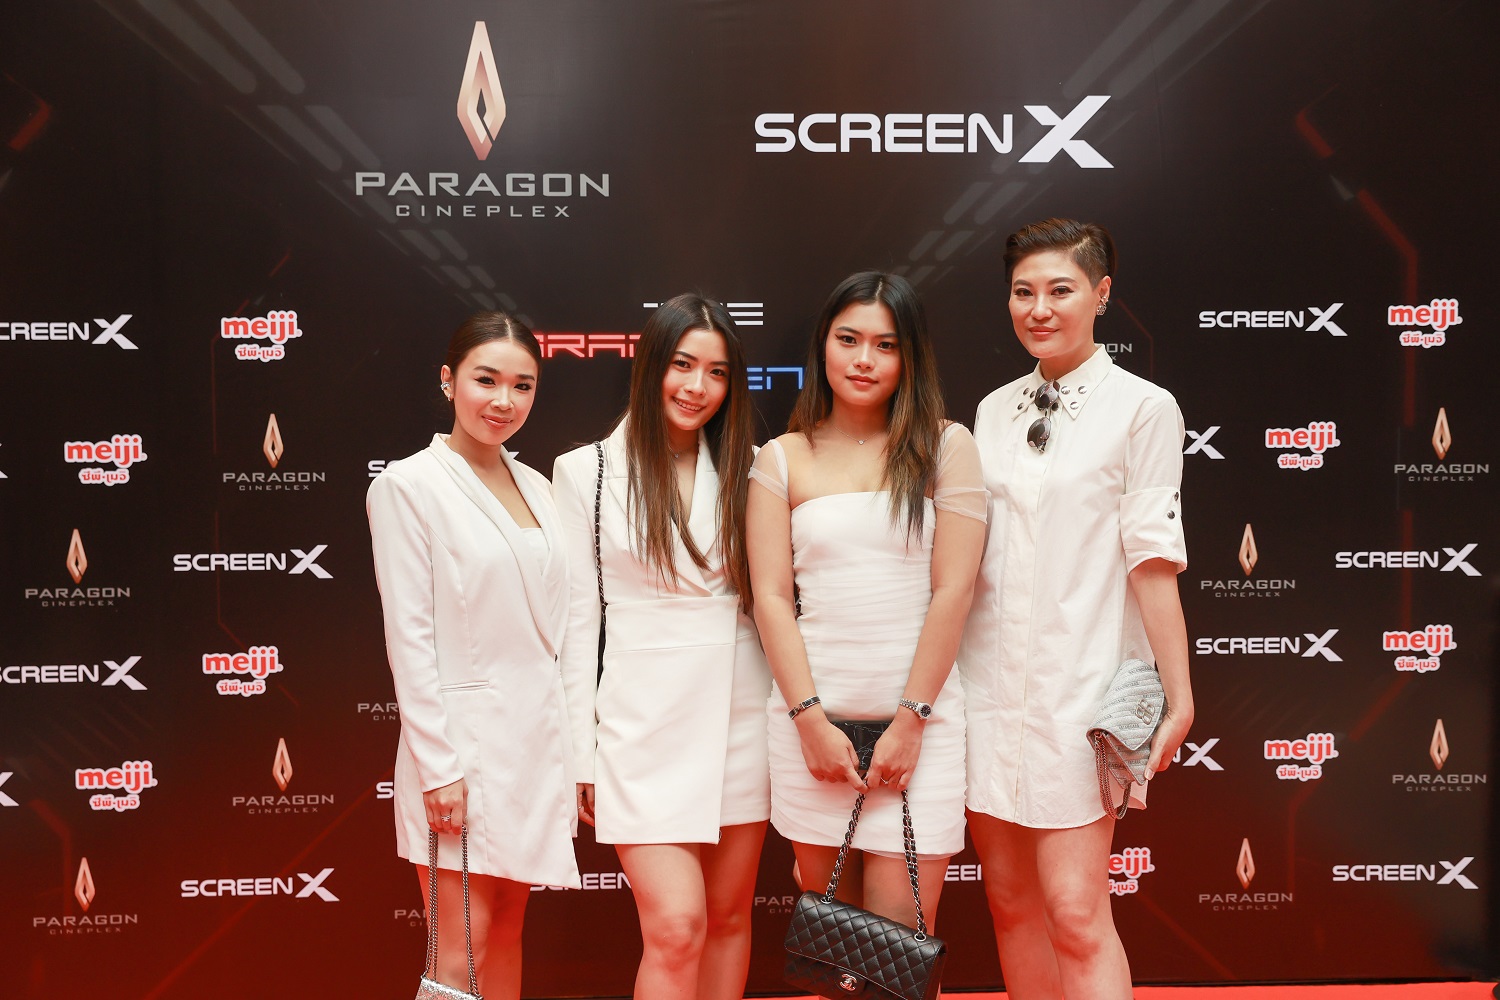 เมเจอร์ ซีนีเพล็กซ์ กรุ้ป เปิดตัว “โรงภาพยนตร์ ScreenX” แห่งใหม่ใหญ่ที่สุดในไทย เหนือระดับด้วยมุมมองภาพที่กว้างมากขึ้นถึง 270 องศา